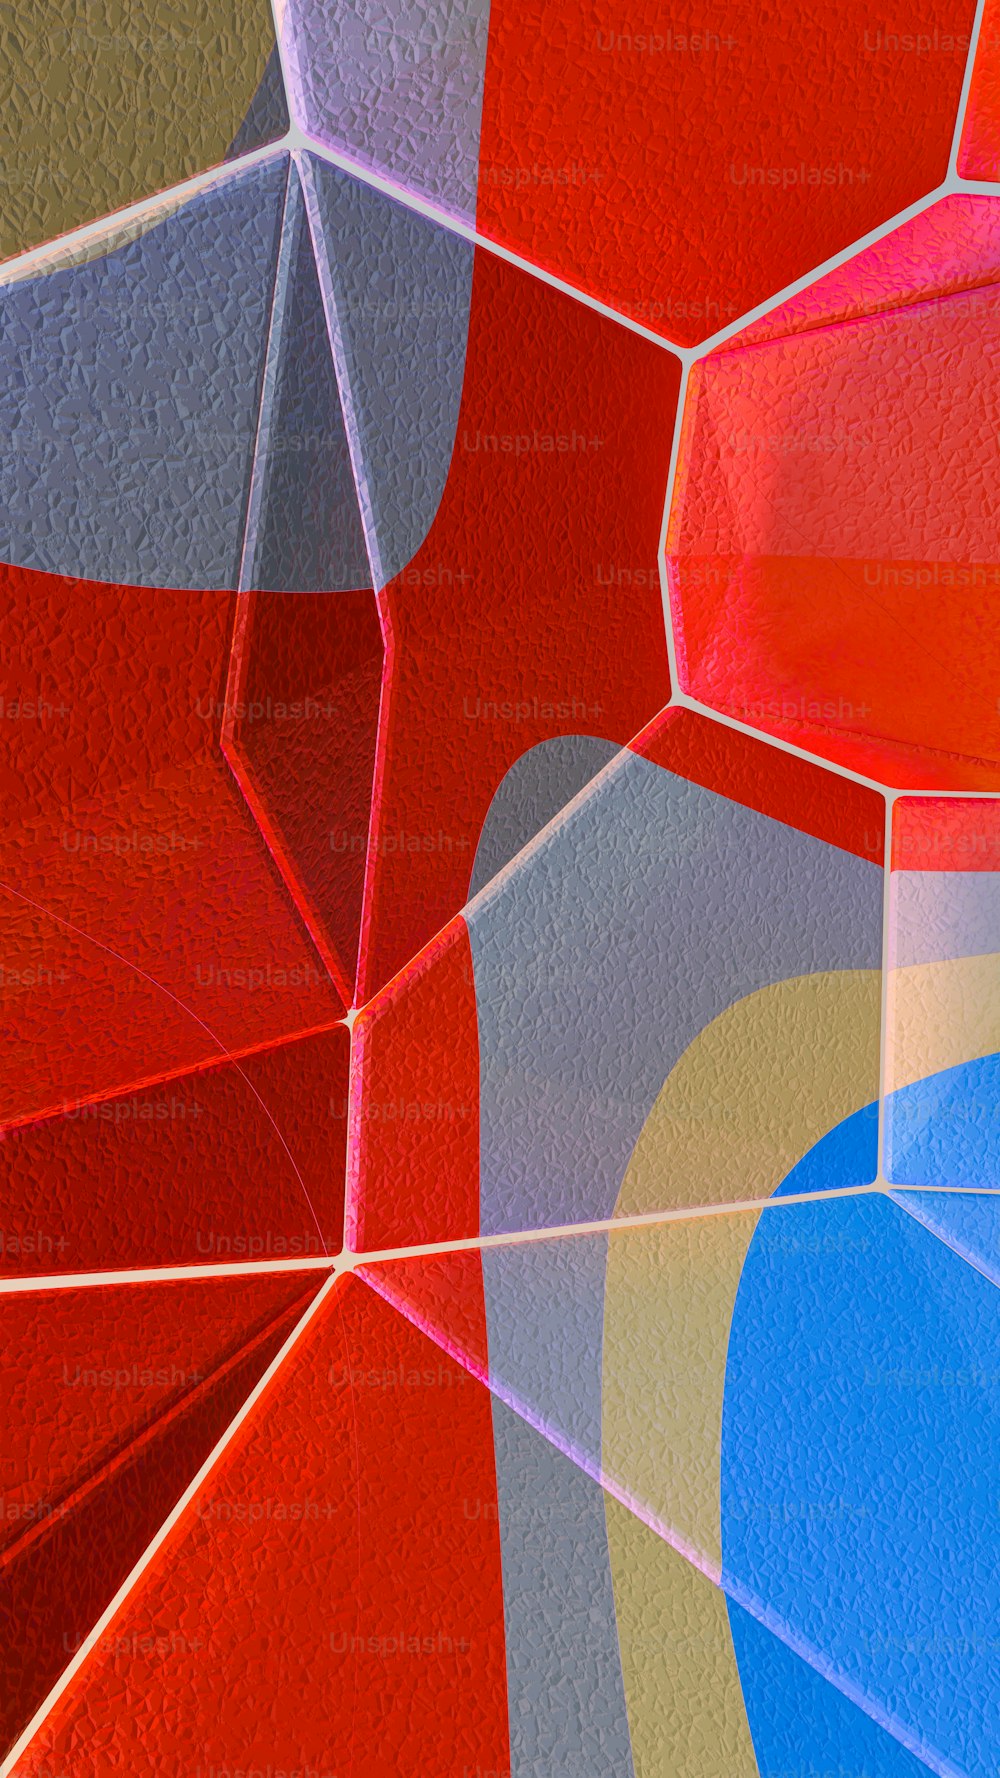 Un primer plano de una pintura abstracta roja y azul